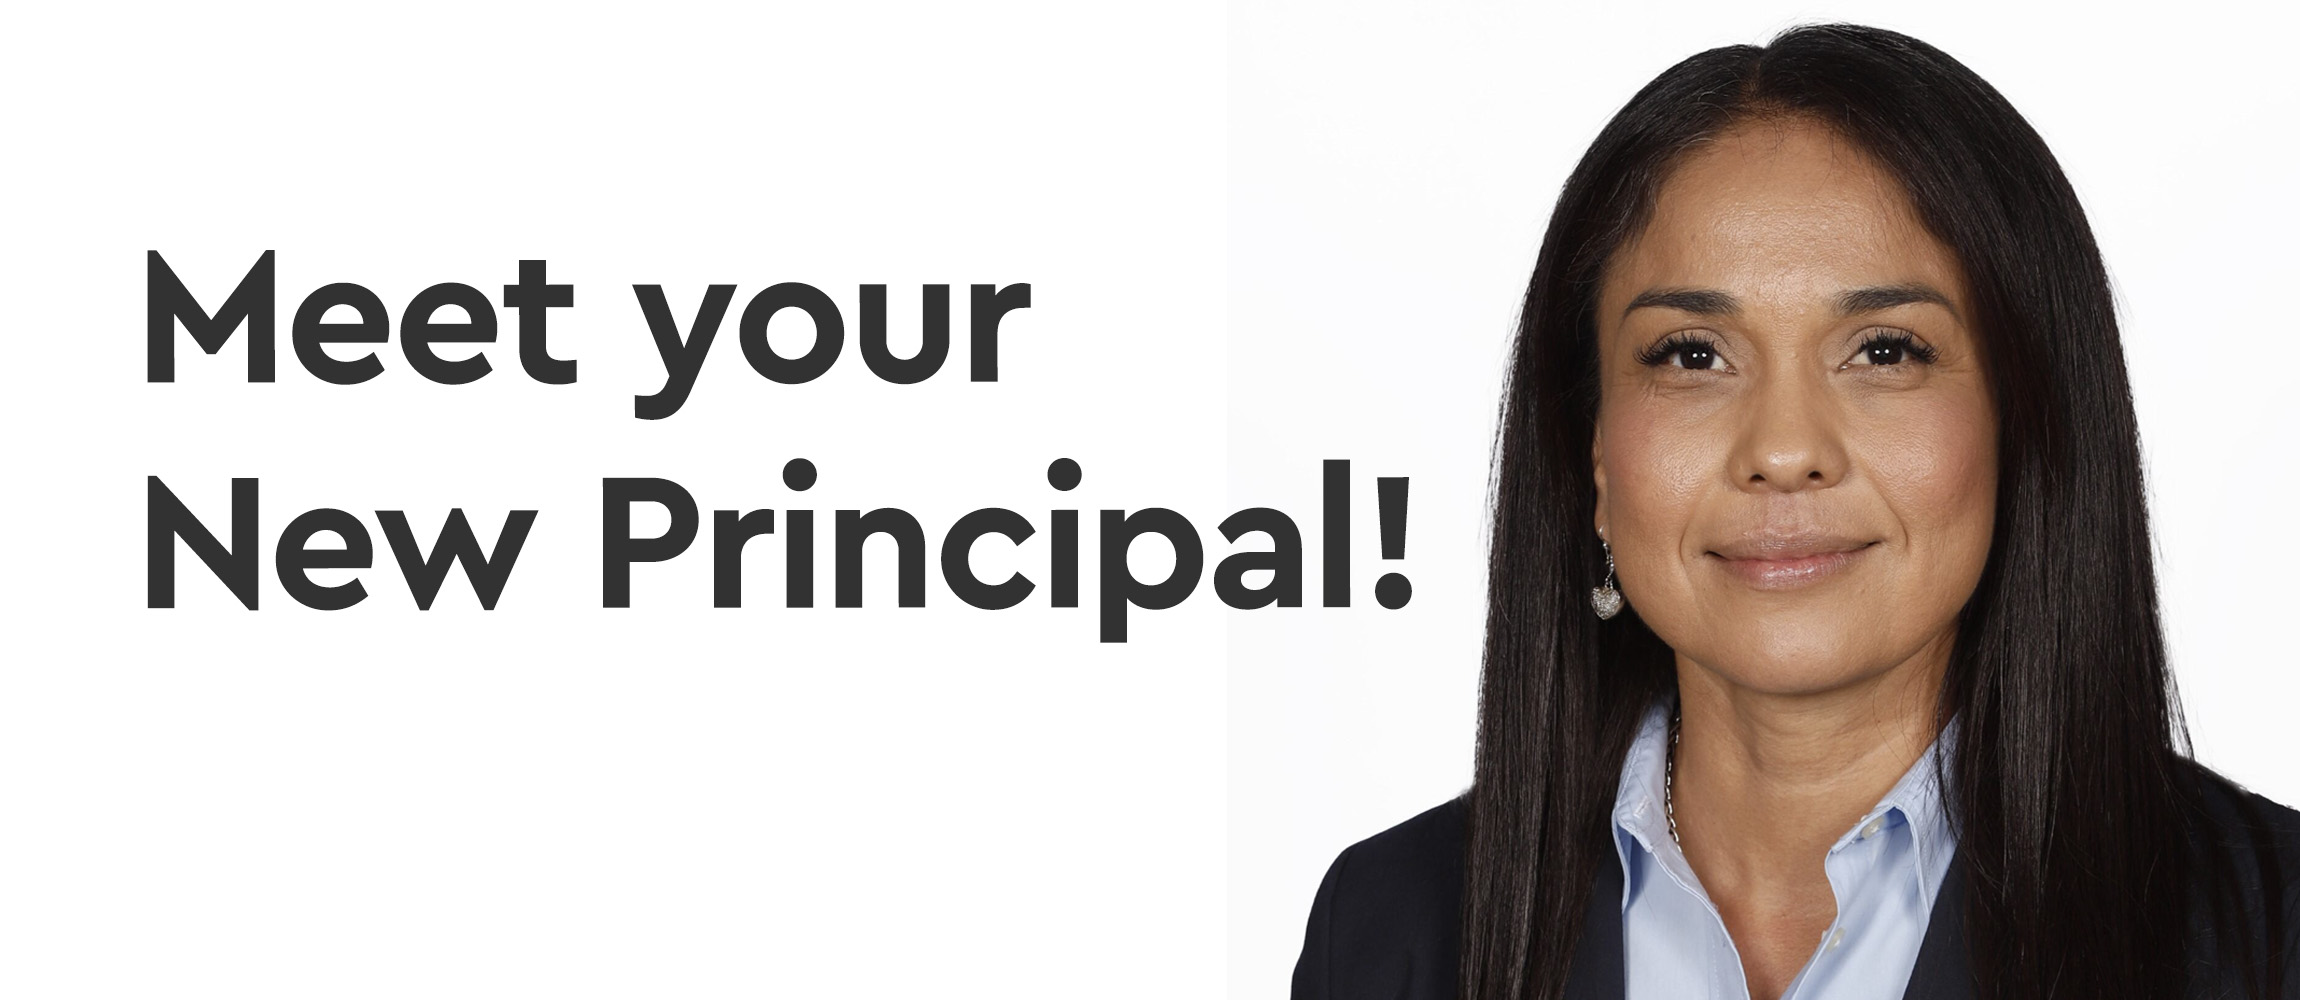 Meet your new principal